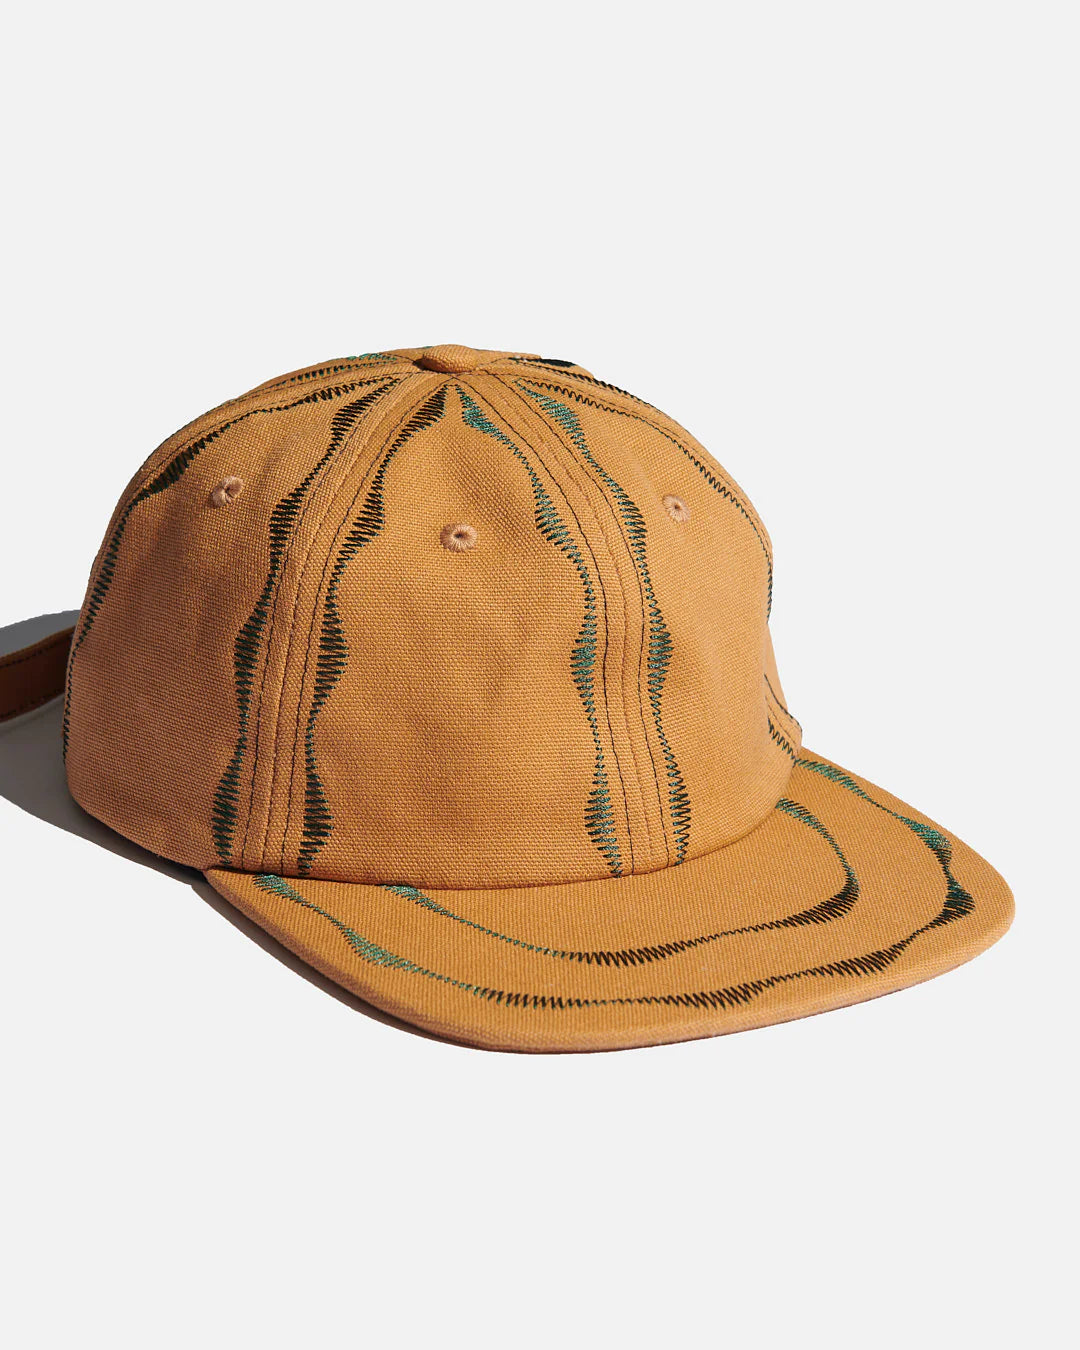 Sexhippies Welder's Stitch Hat "Brown/Forest"